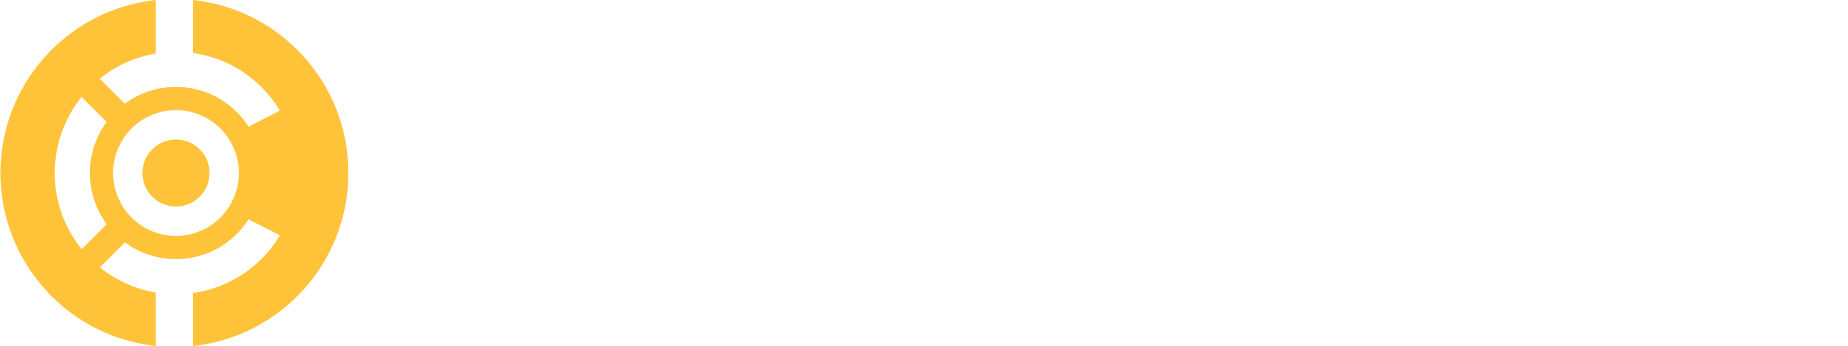 CounterTEN Logo